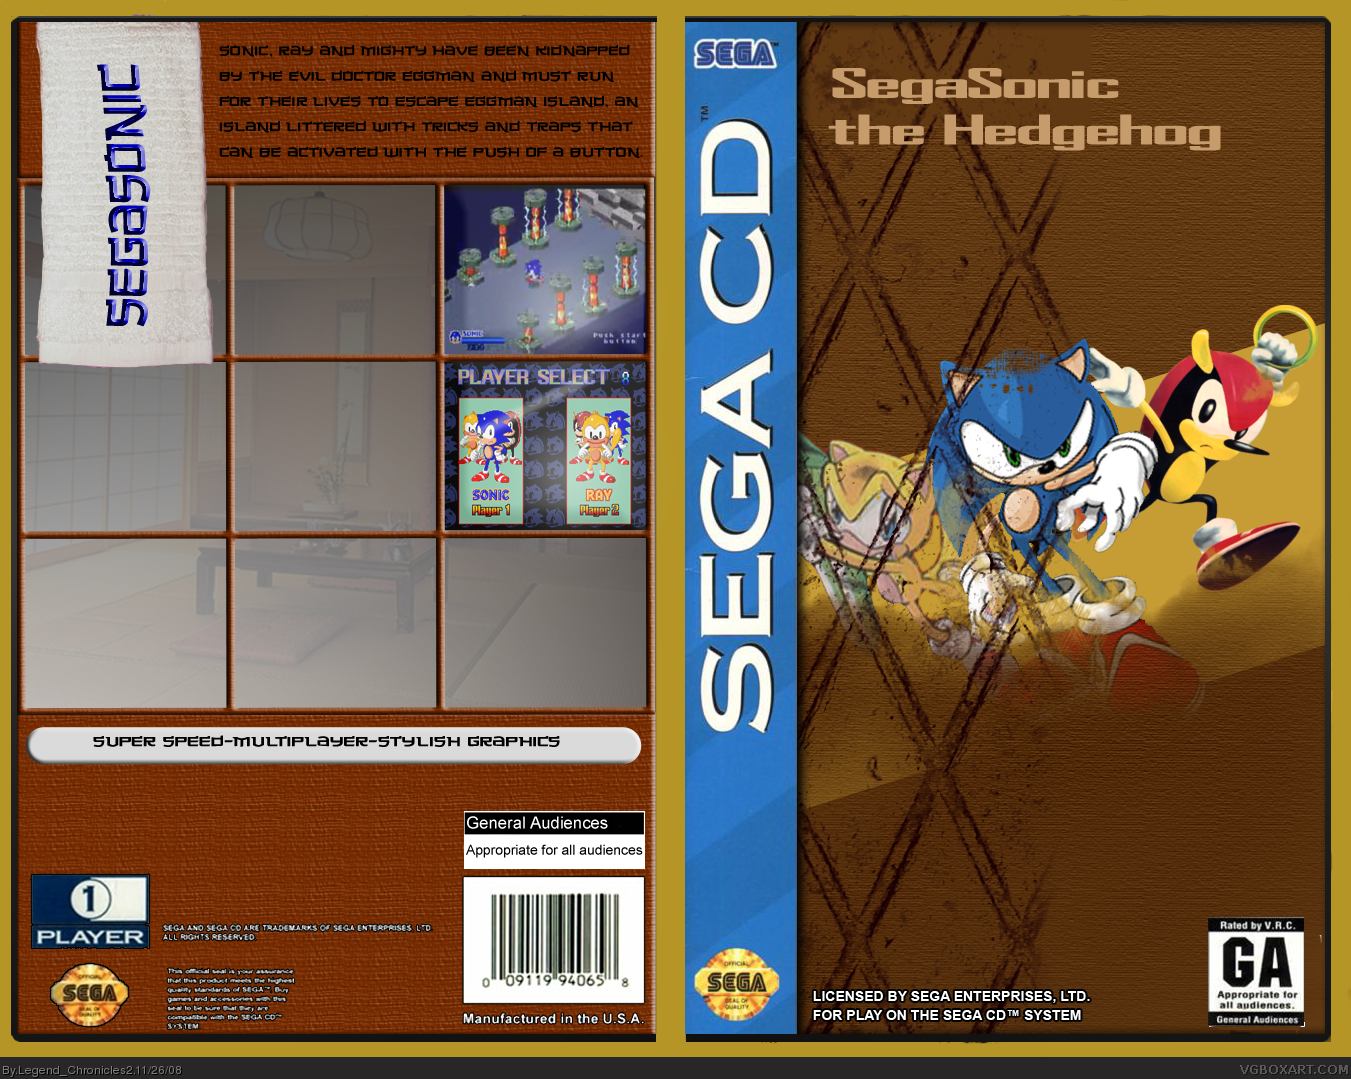 Segasonic the Hedgehog box cover